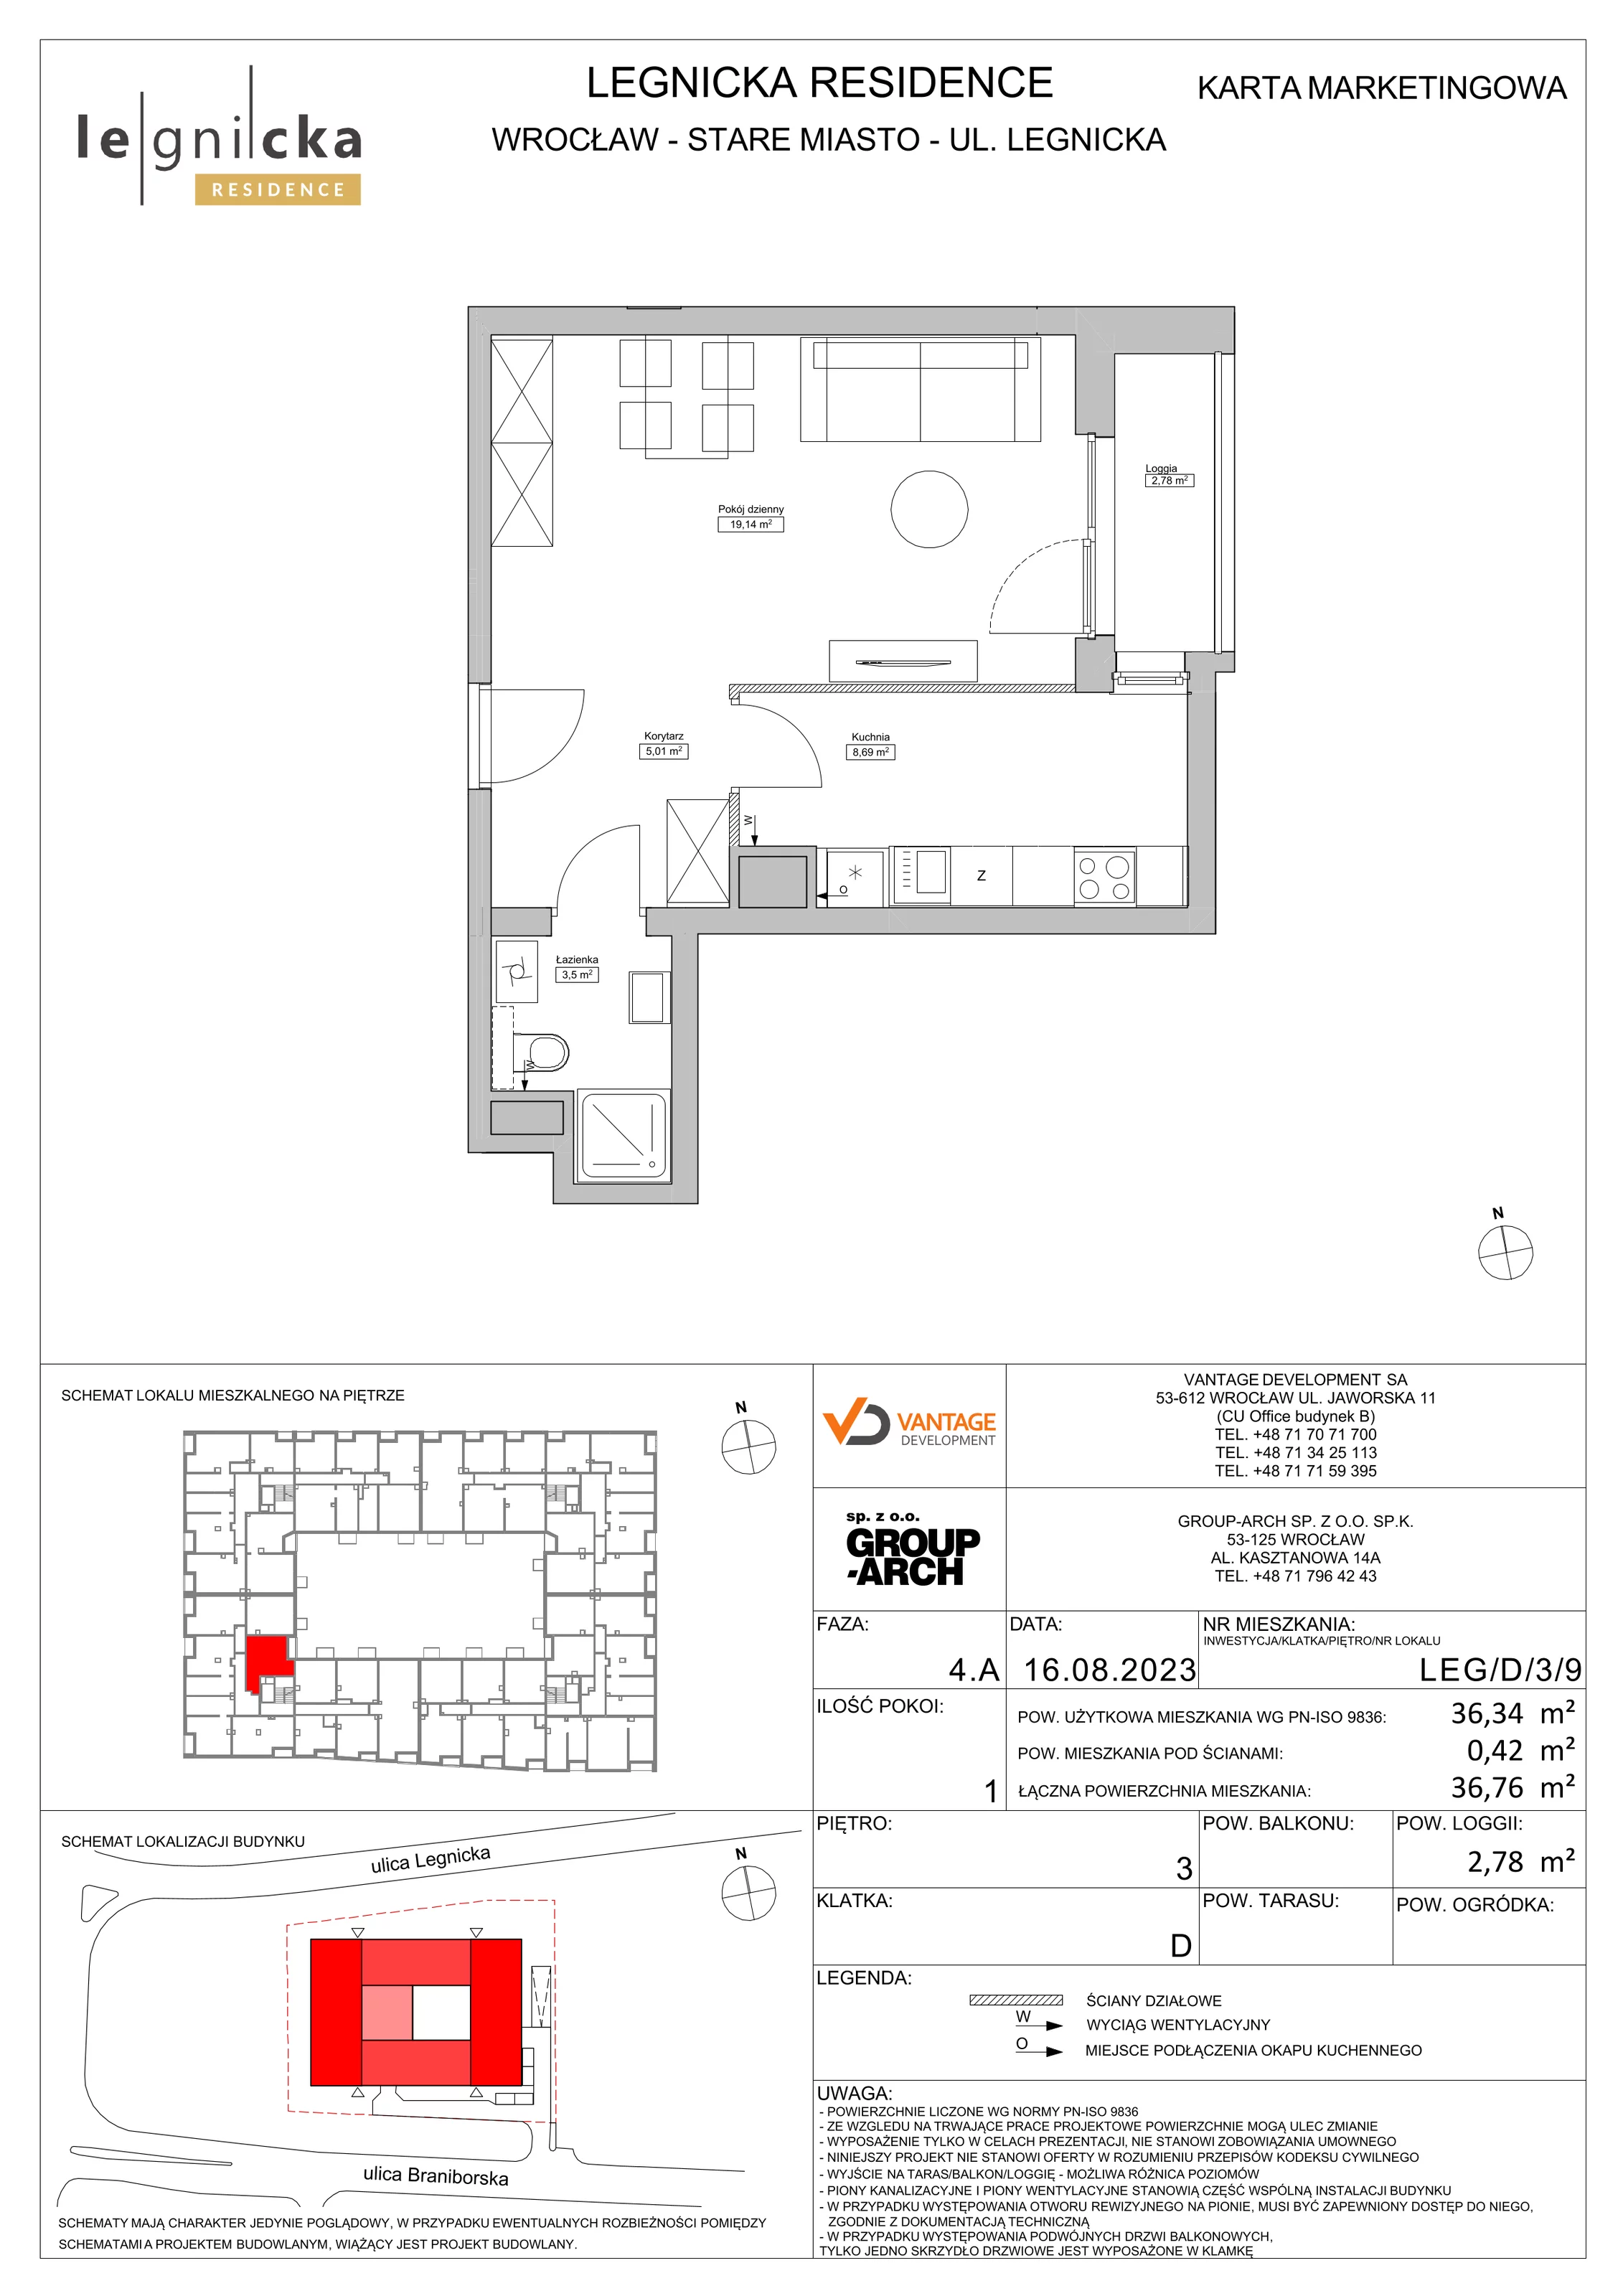 Apartament inwestycyjny 36,34 m², piętro 3, oferta nr LEG/D/3/9, Legnicka Residence, Wrocław, Szczepin, ul. Legnicka 36